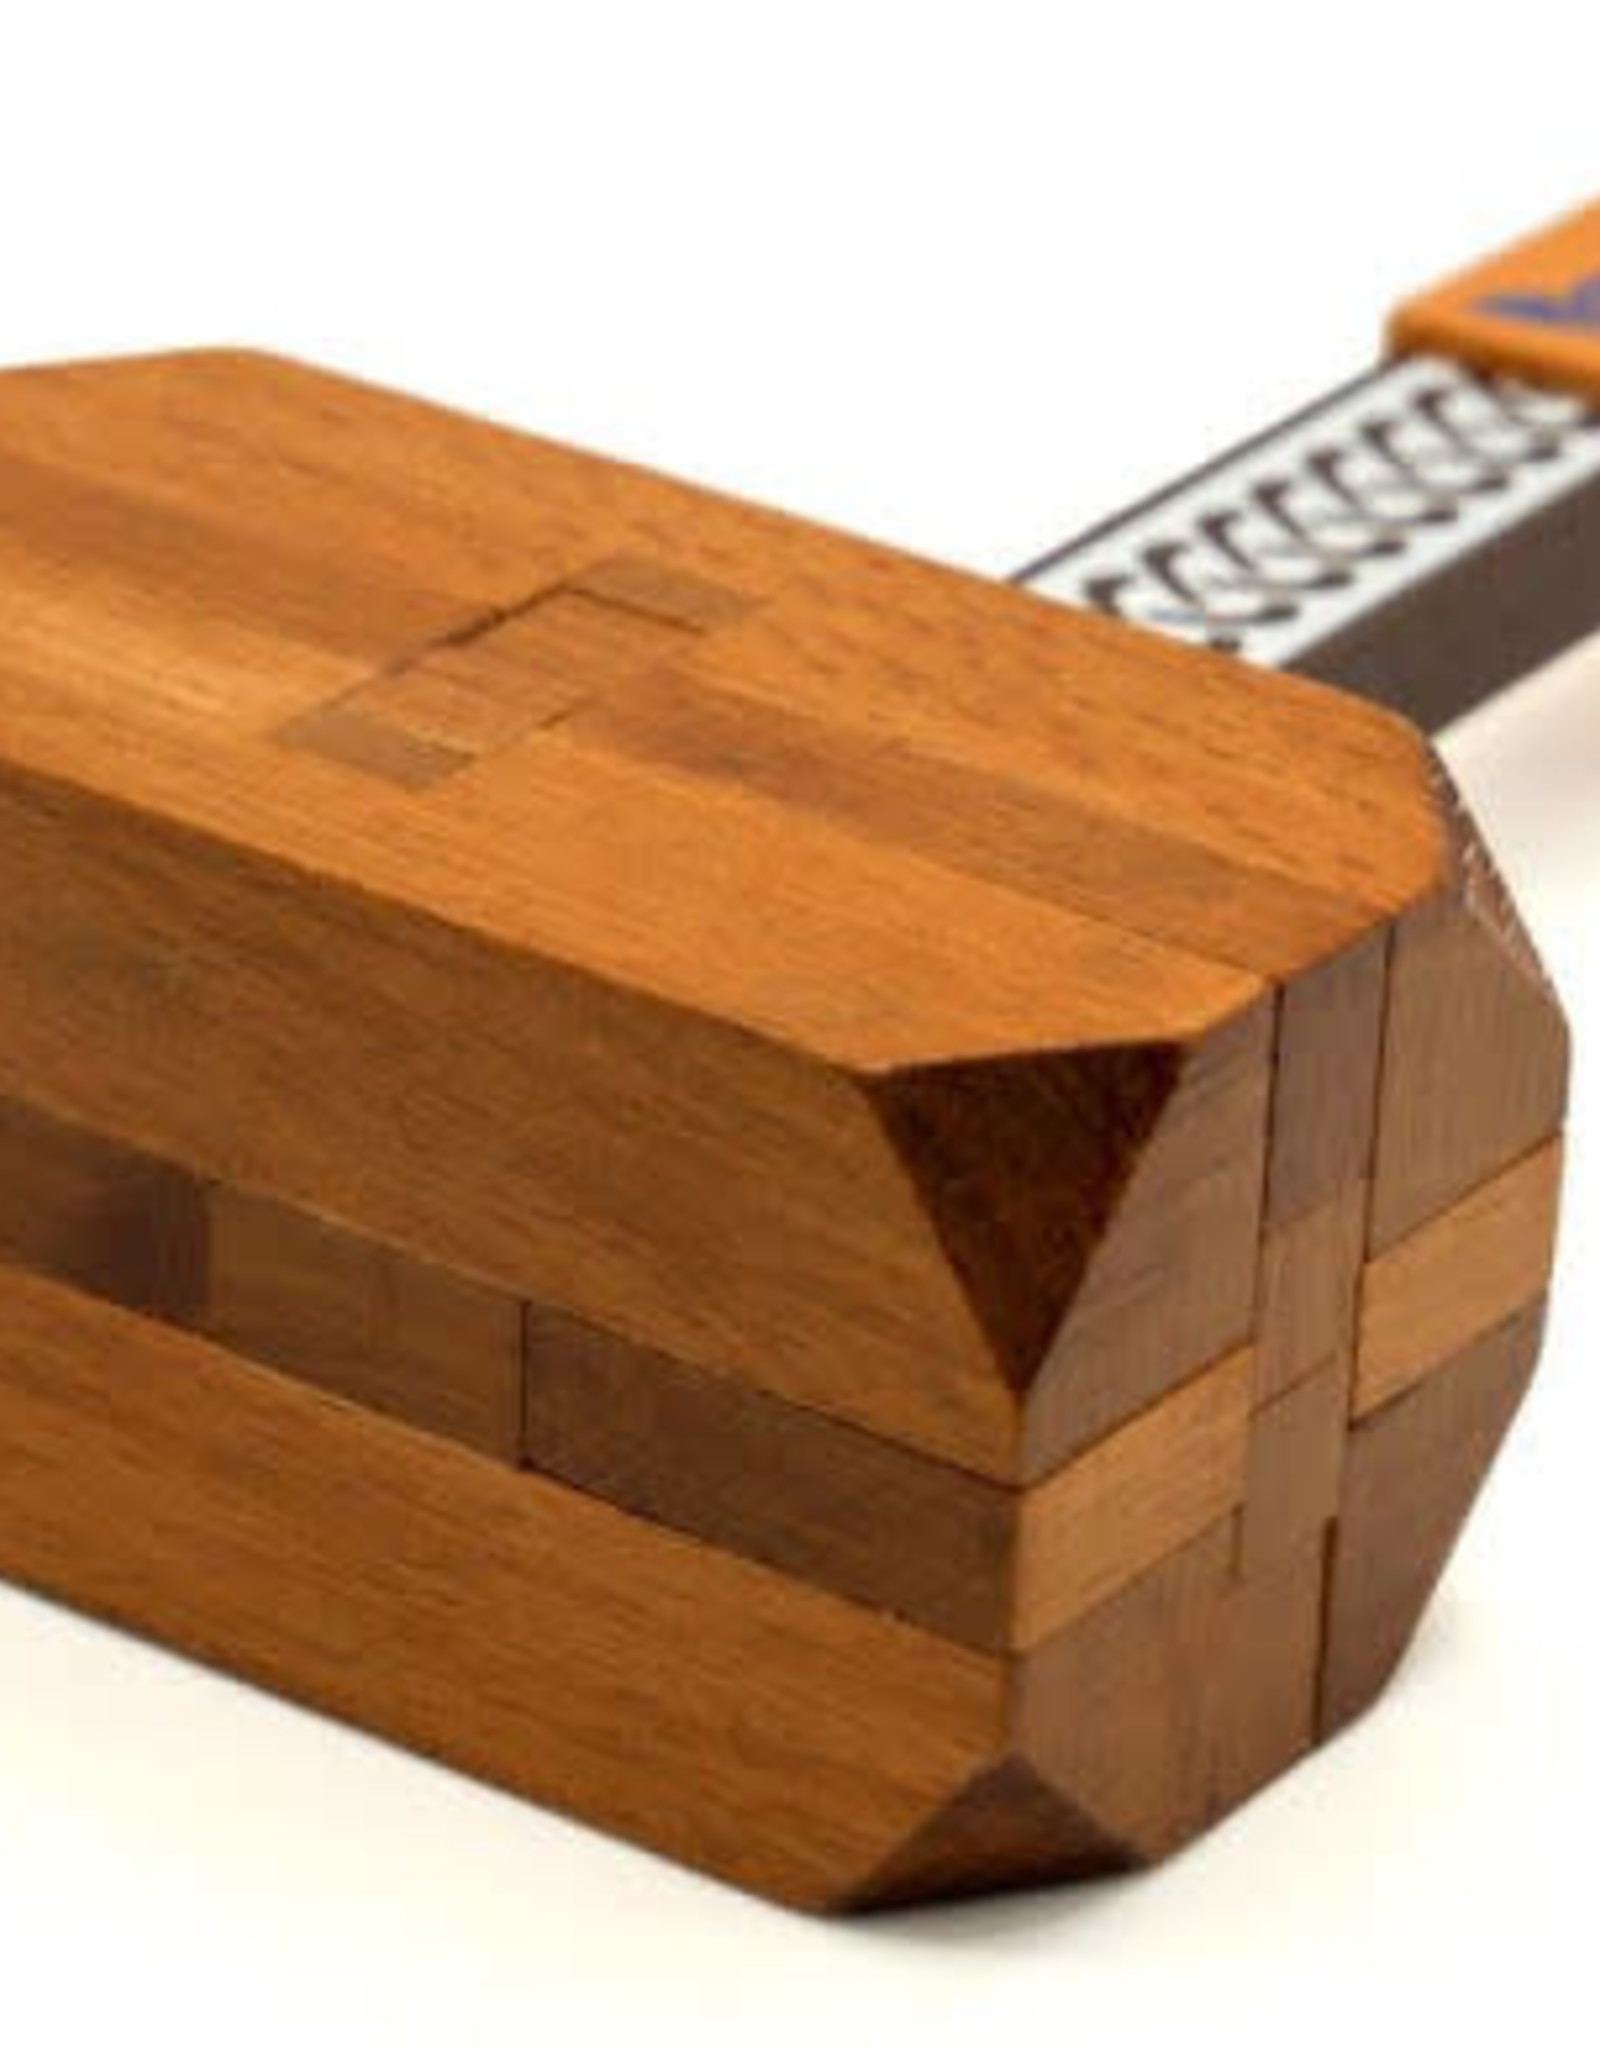 Thor's Hammer True Genius Wooden Puzzle